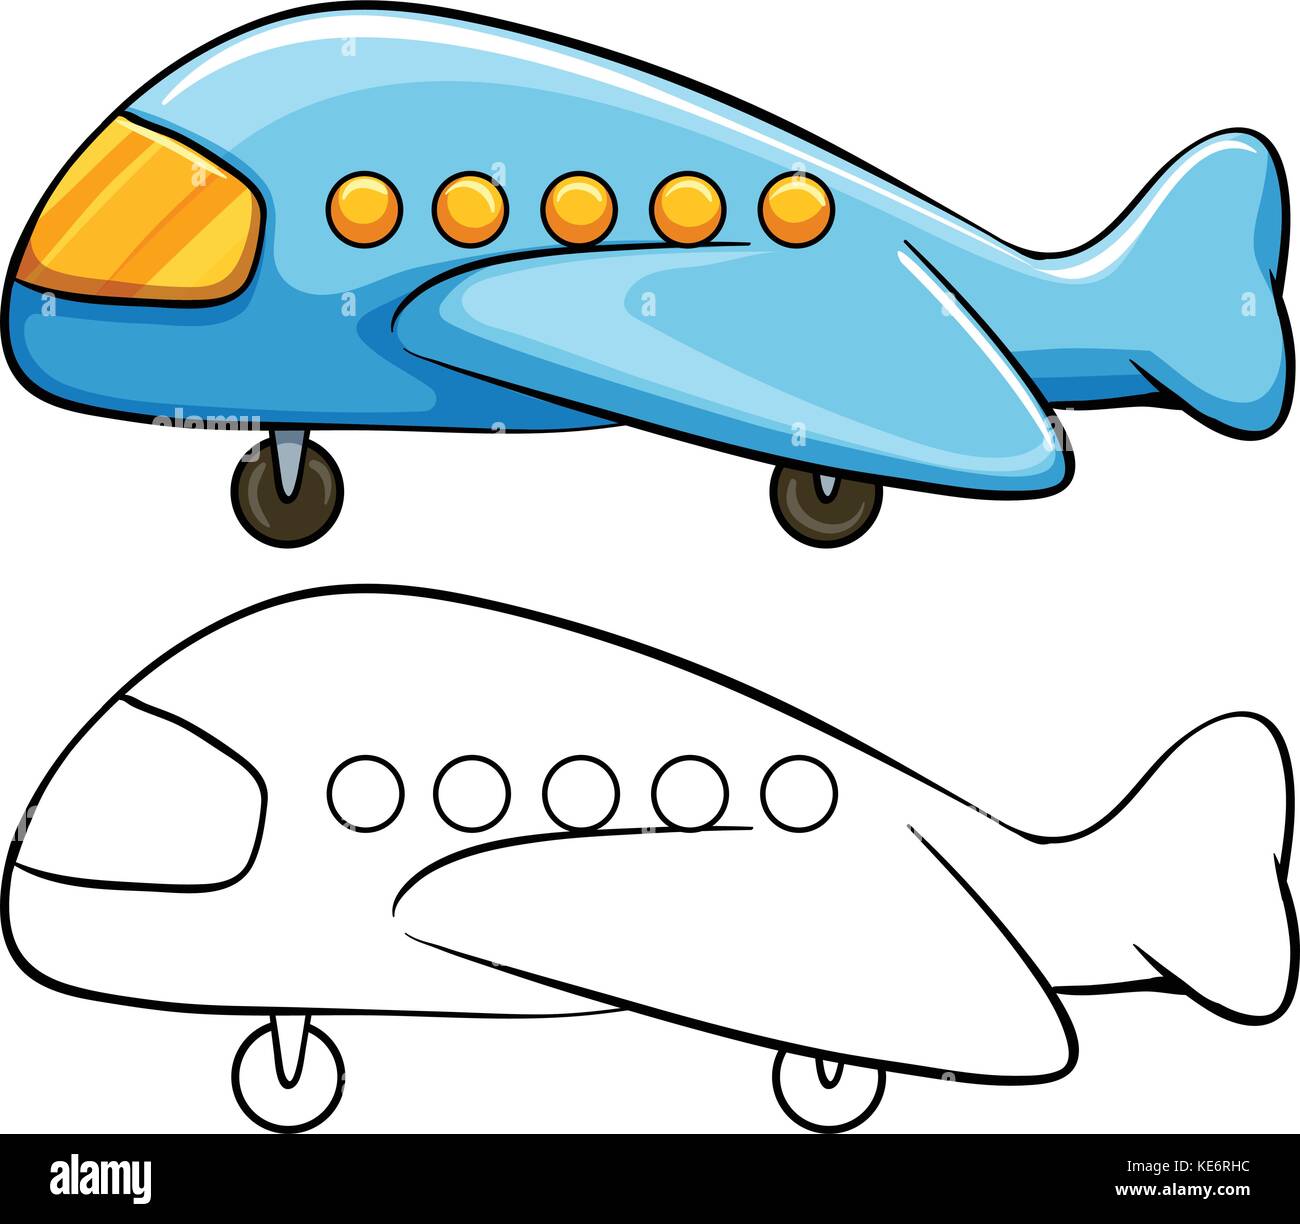 Avión de juguete con dibujo sencillo Imagen Vector de stock - Alamy